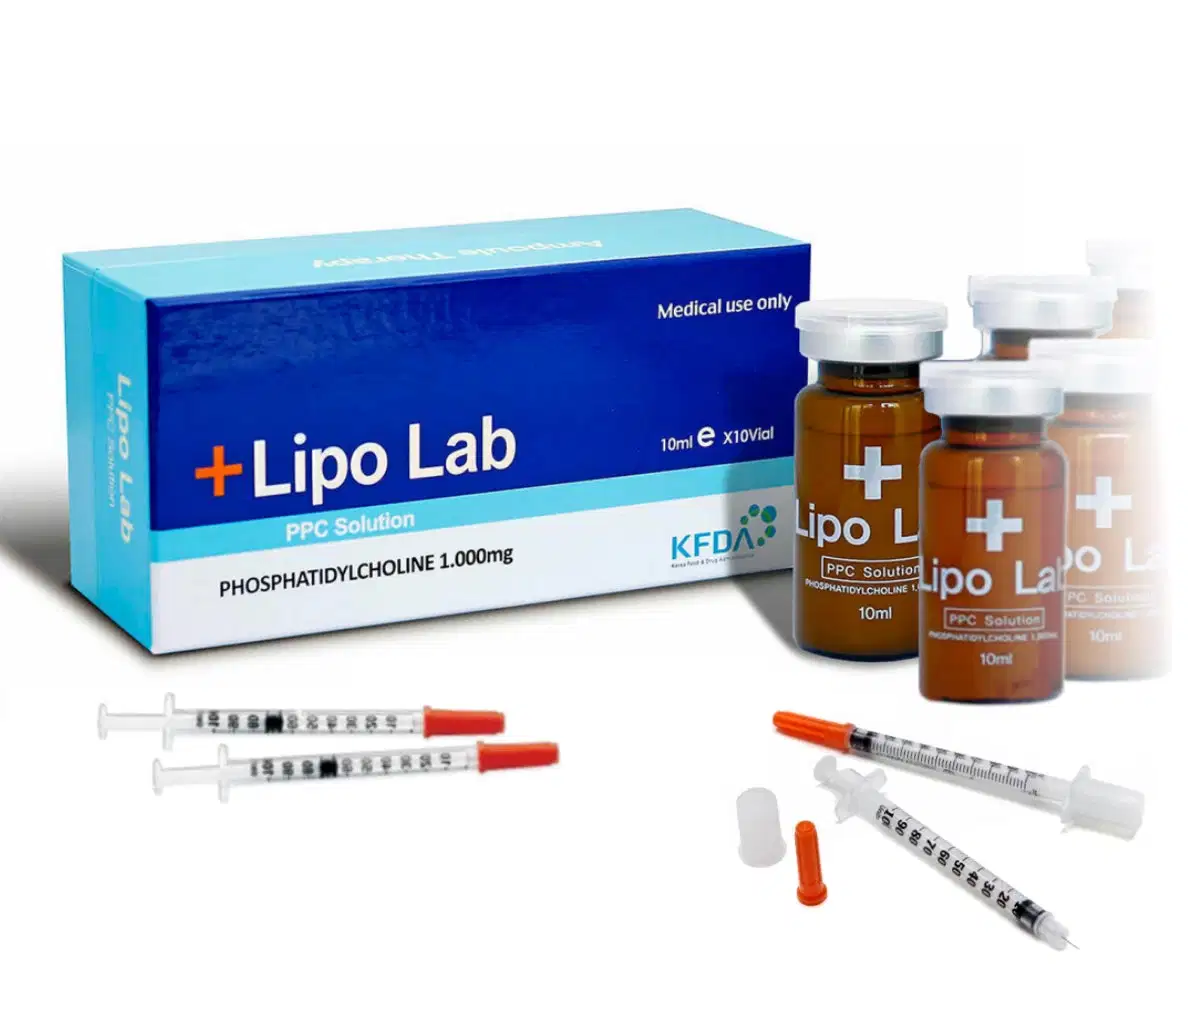 Korea Lipo Lab Ppc Solution amincissante Dissolution des graisses Kybella Lipolab Injection de lipolyse Lipo Lab pour le ventre, les bras et les jambes